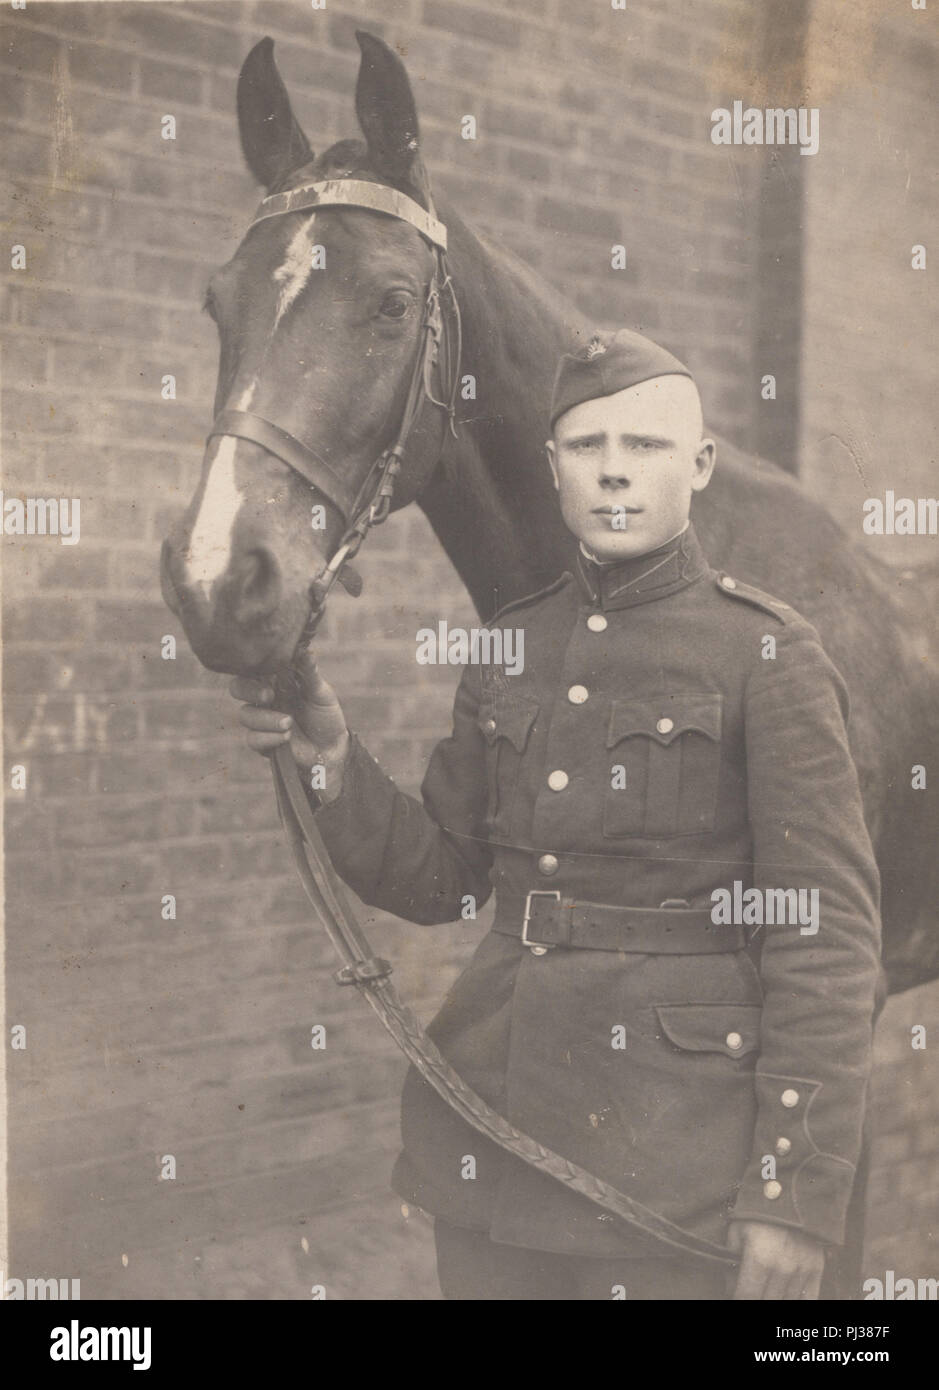 Vintage Photo d'un soldat allemand avec son cheval Banque D'Images